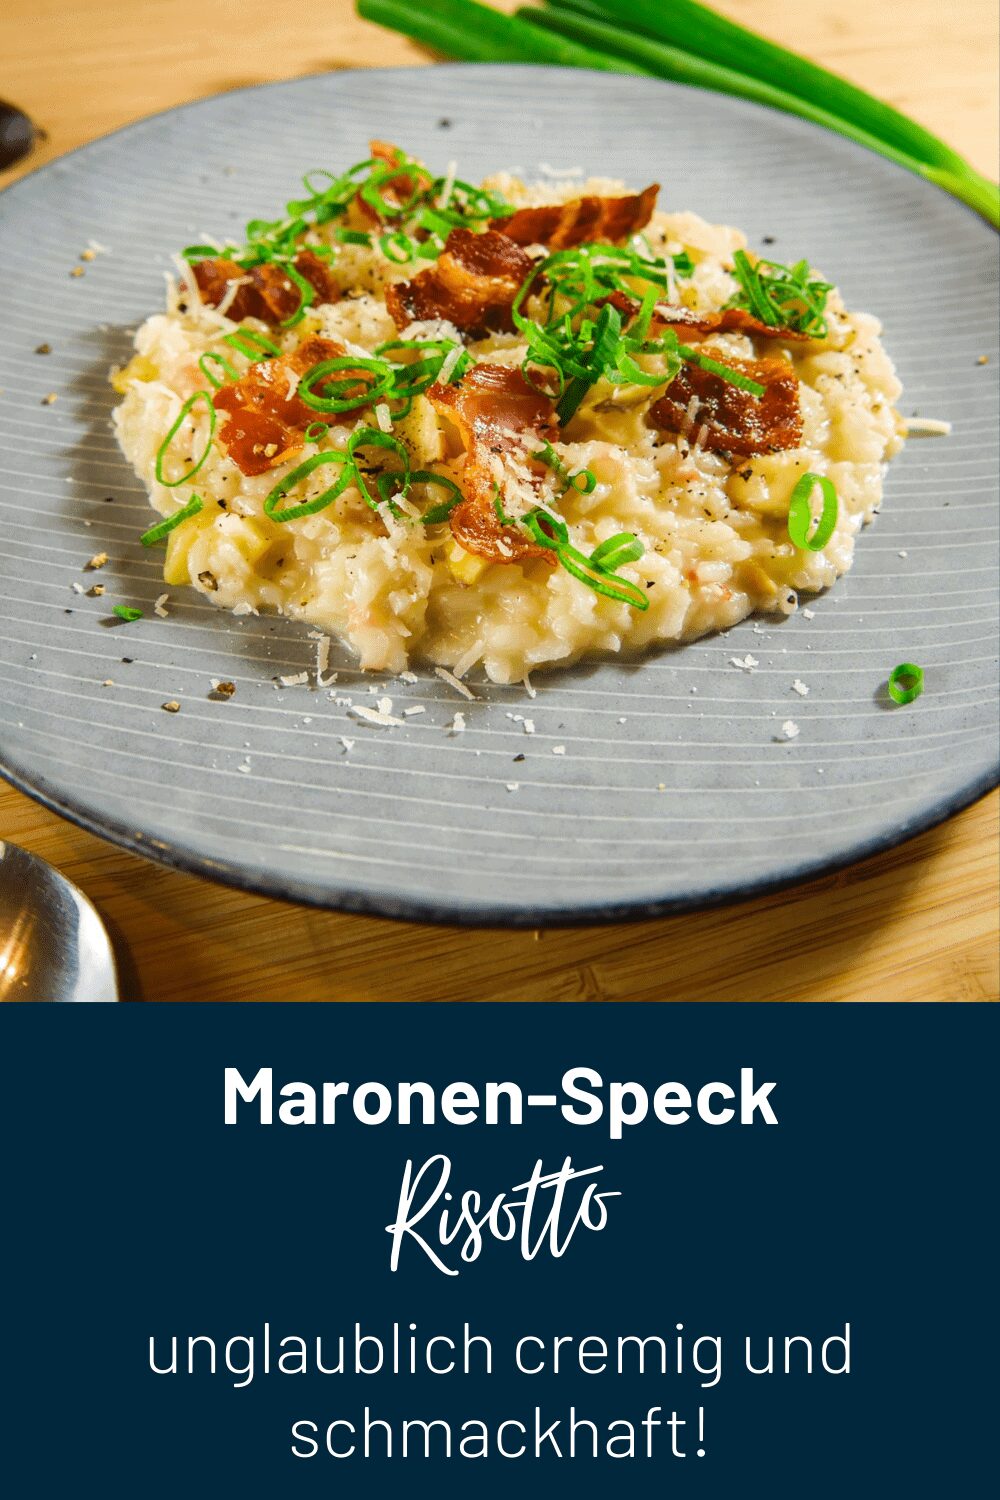 Maronen-Speck Risotto